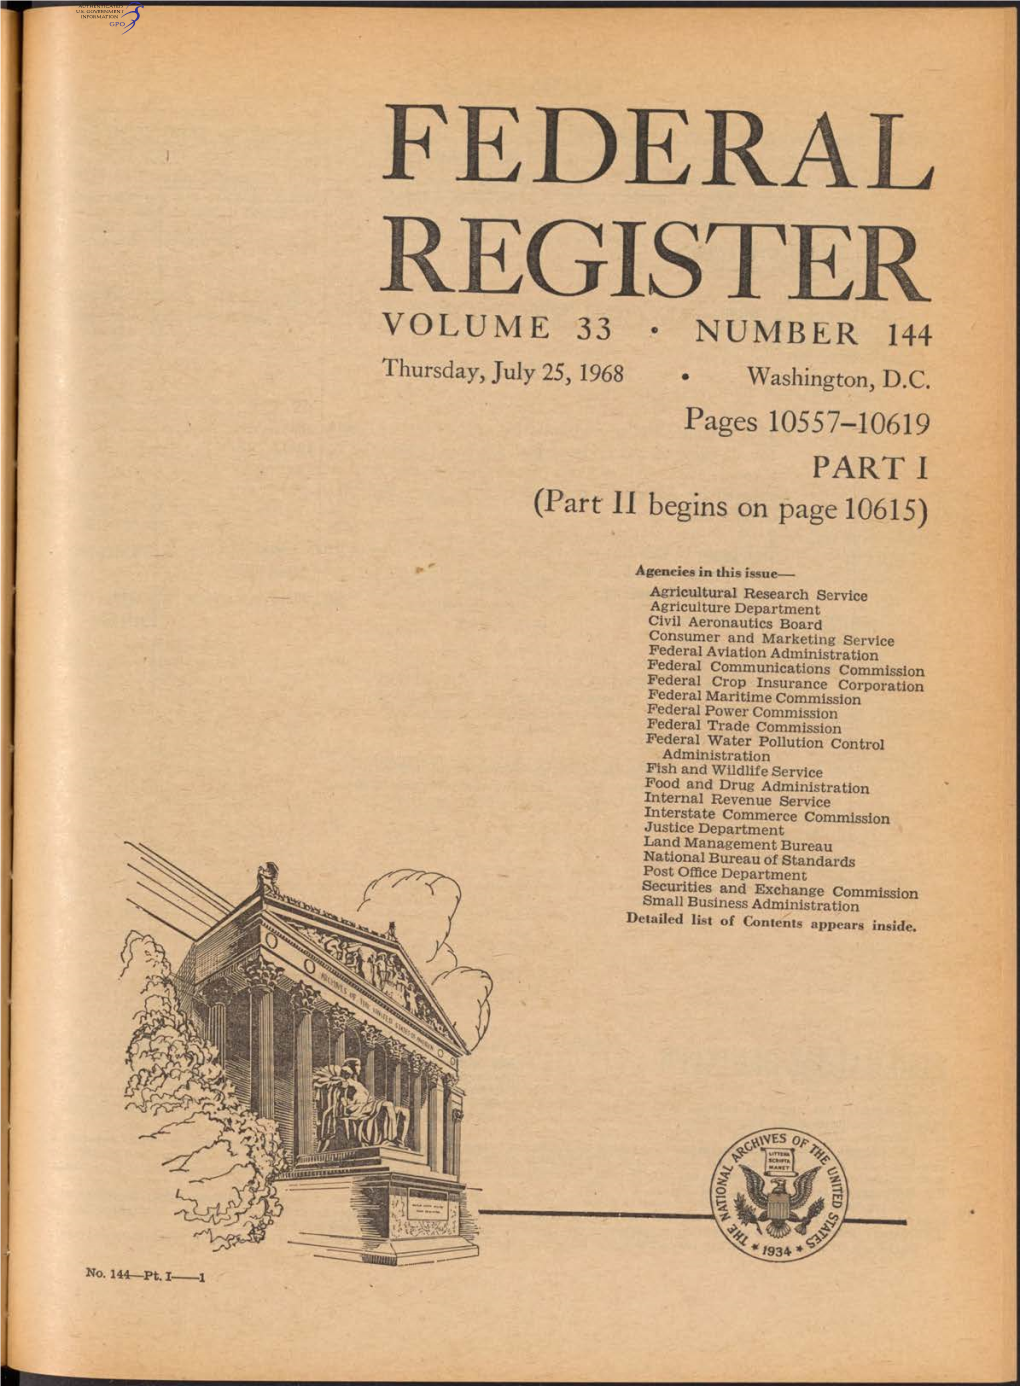 Federal Register Volume 33 • Number 144